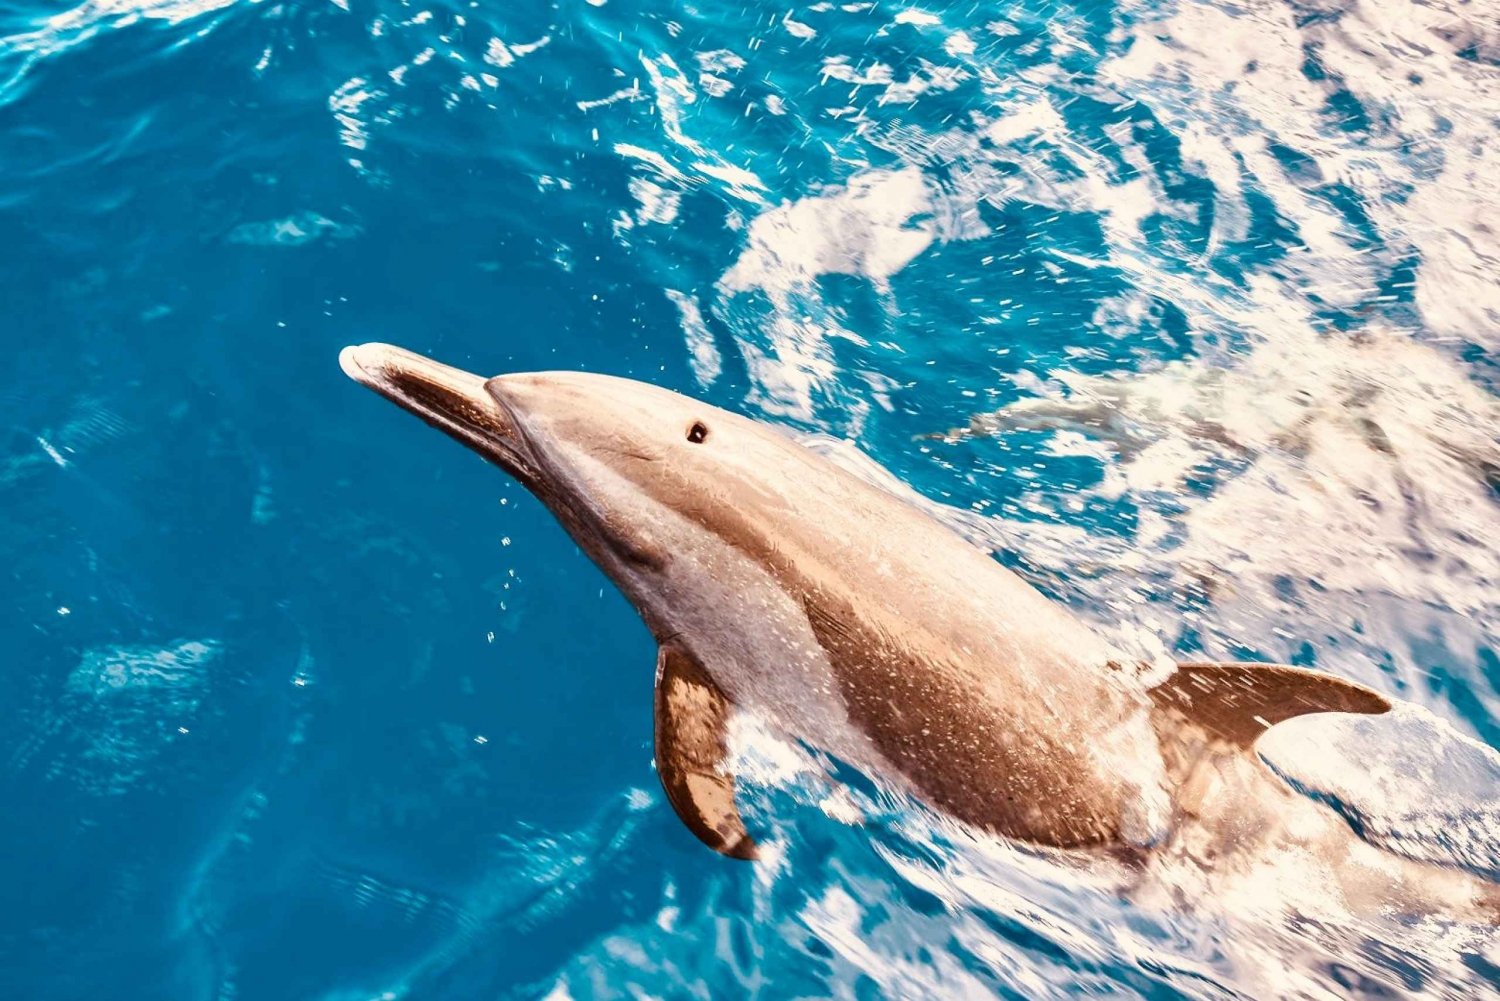 West O'ahu: osservazione dei delfini e crociera in catamarano per lo snorkeling